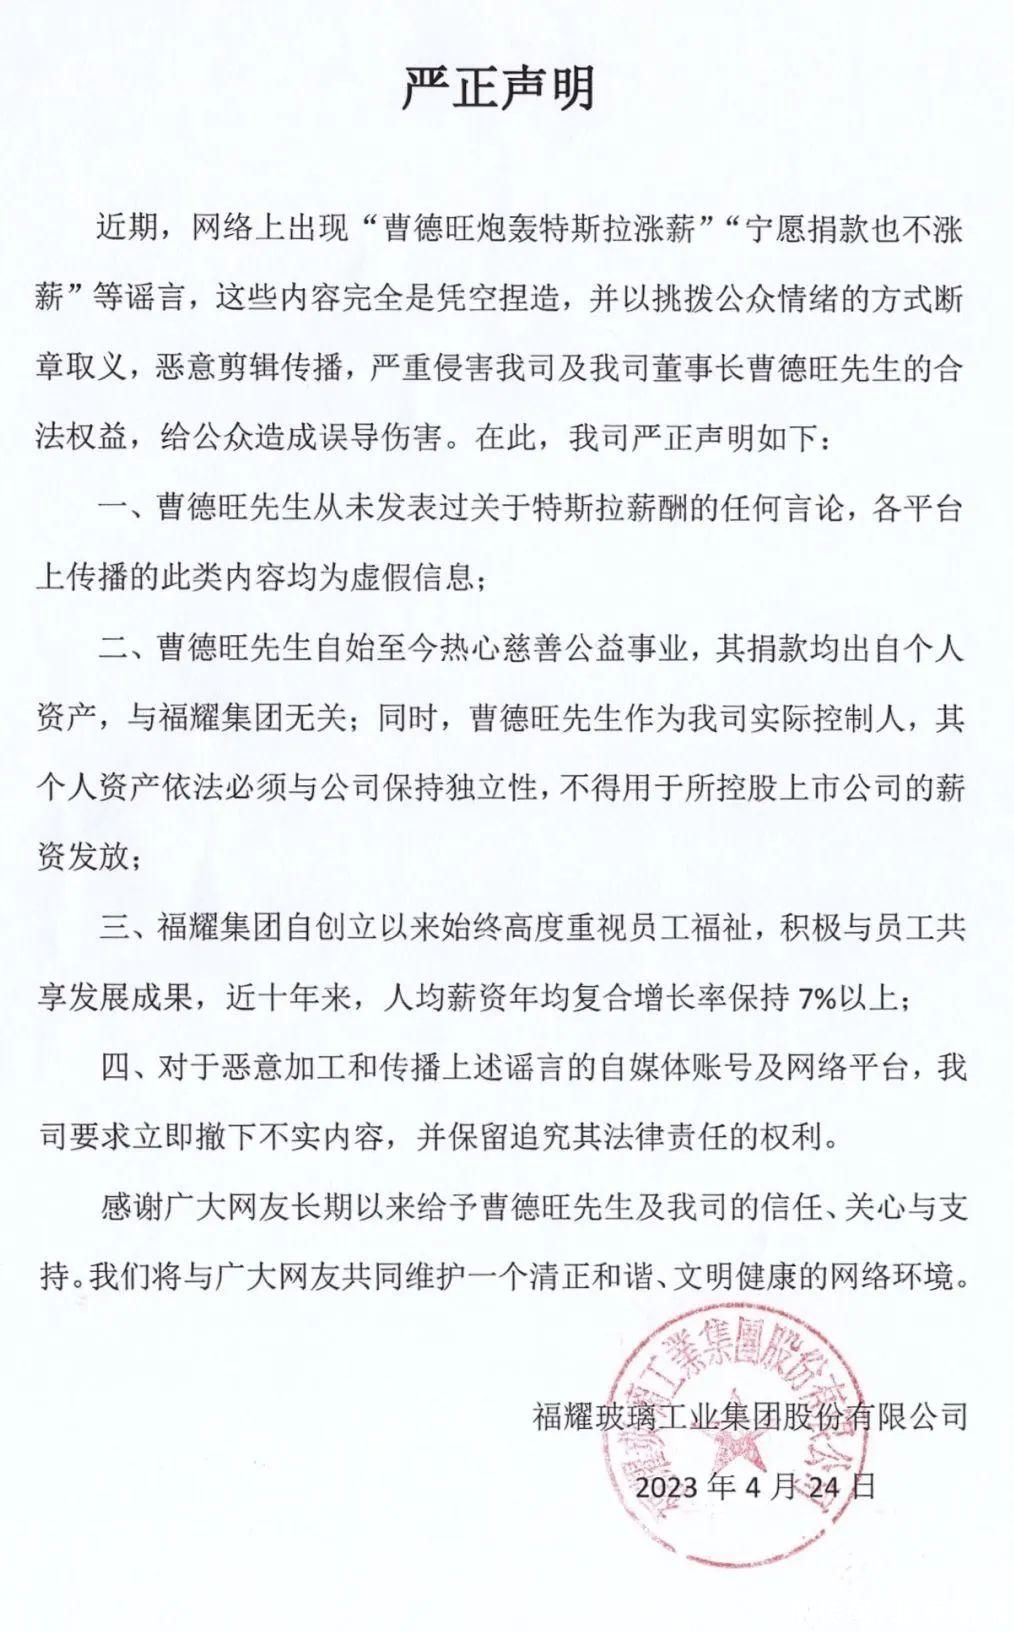 福耀集团声明：曹德旺从未发表过炮轰特斯拉涨薪，宁愿捐款也不涨薪等谣言